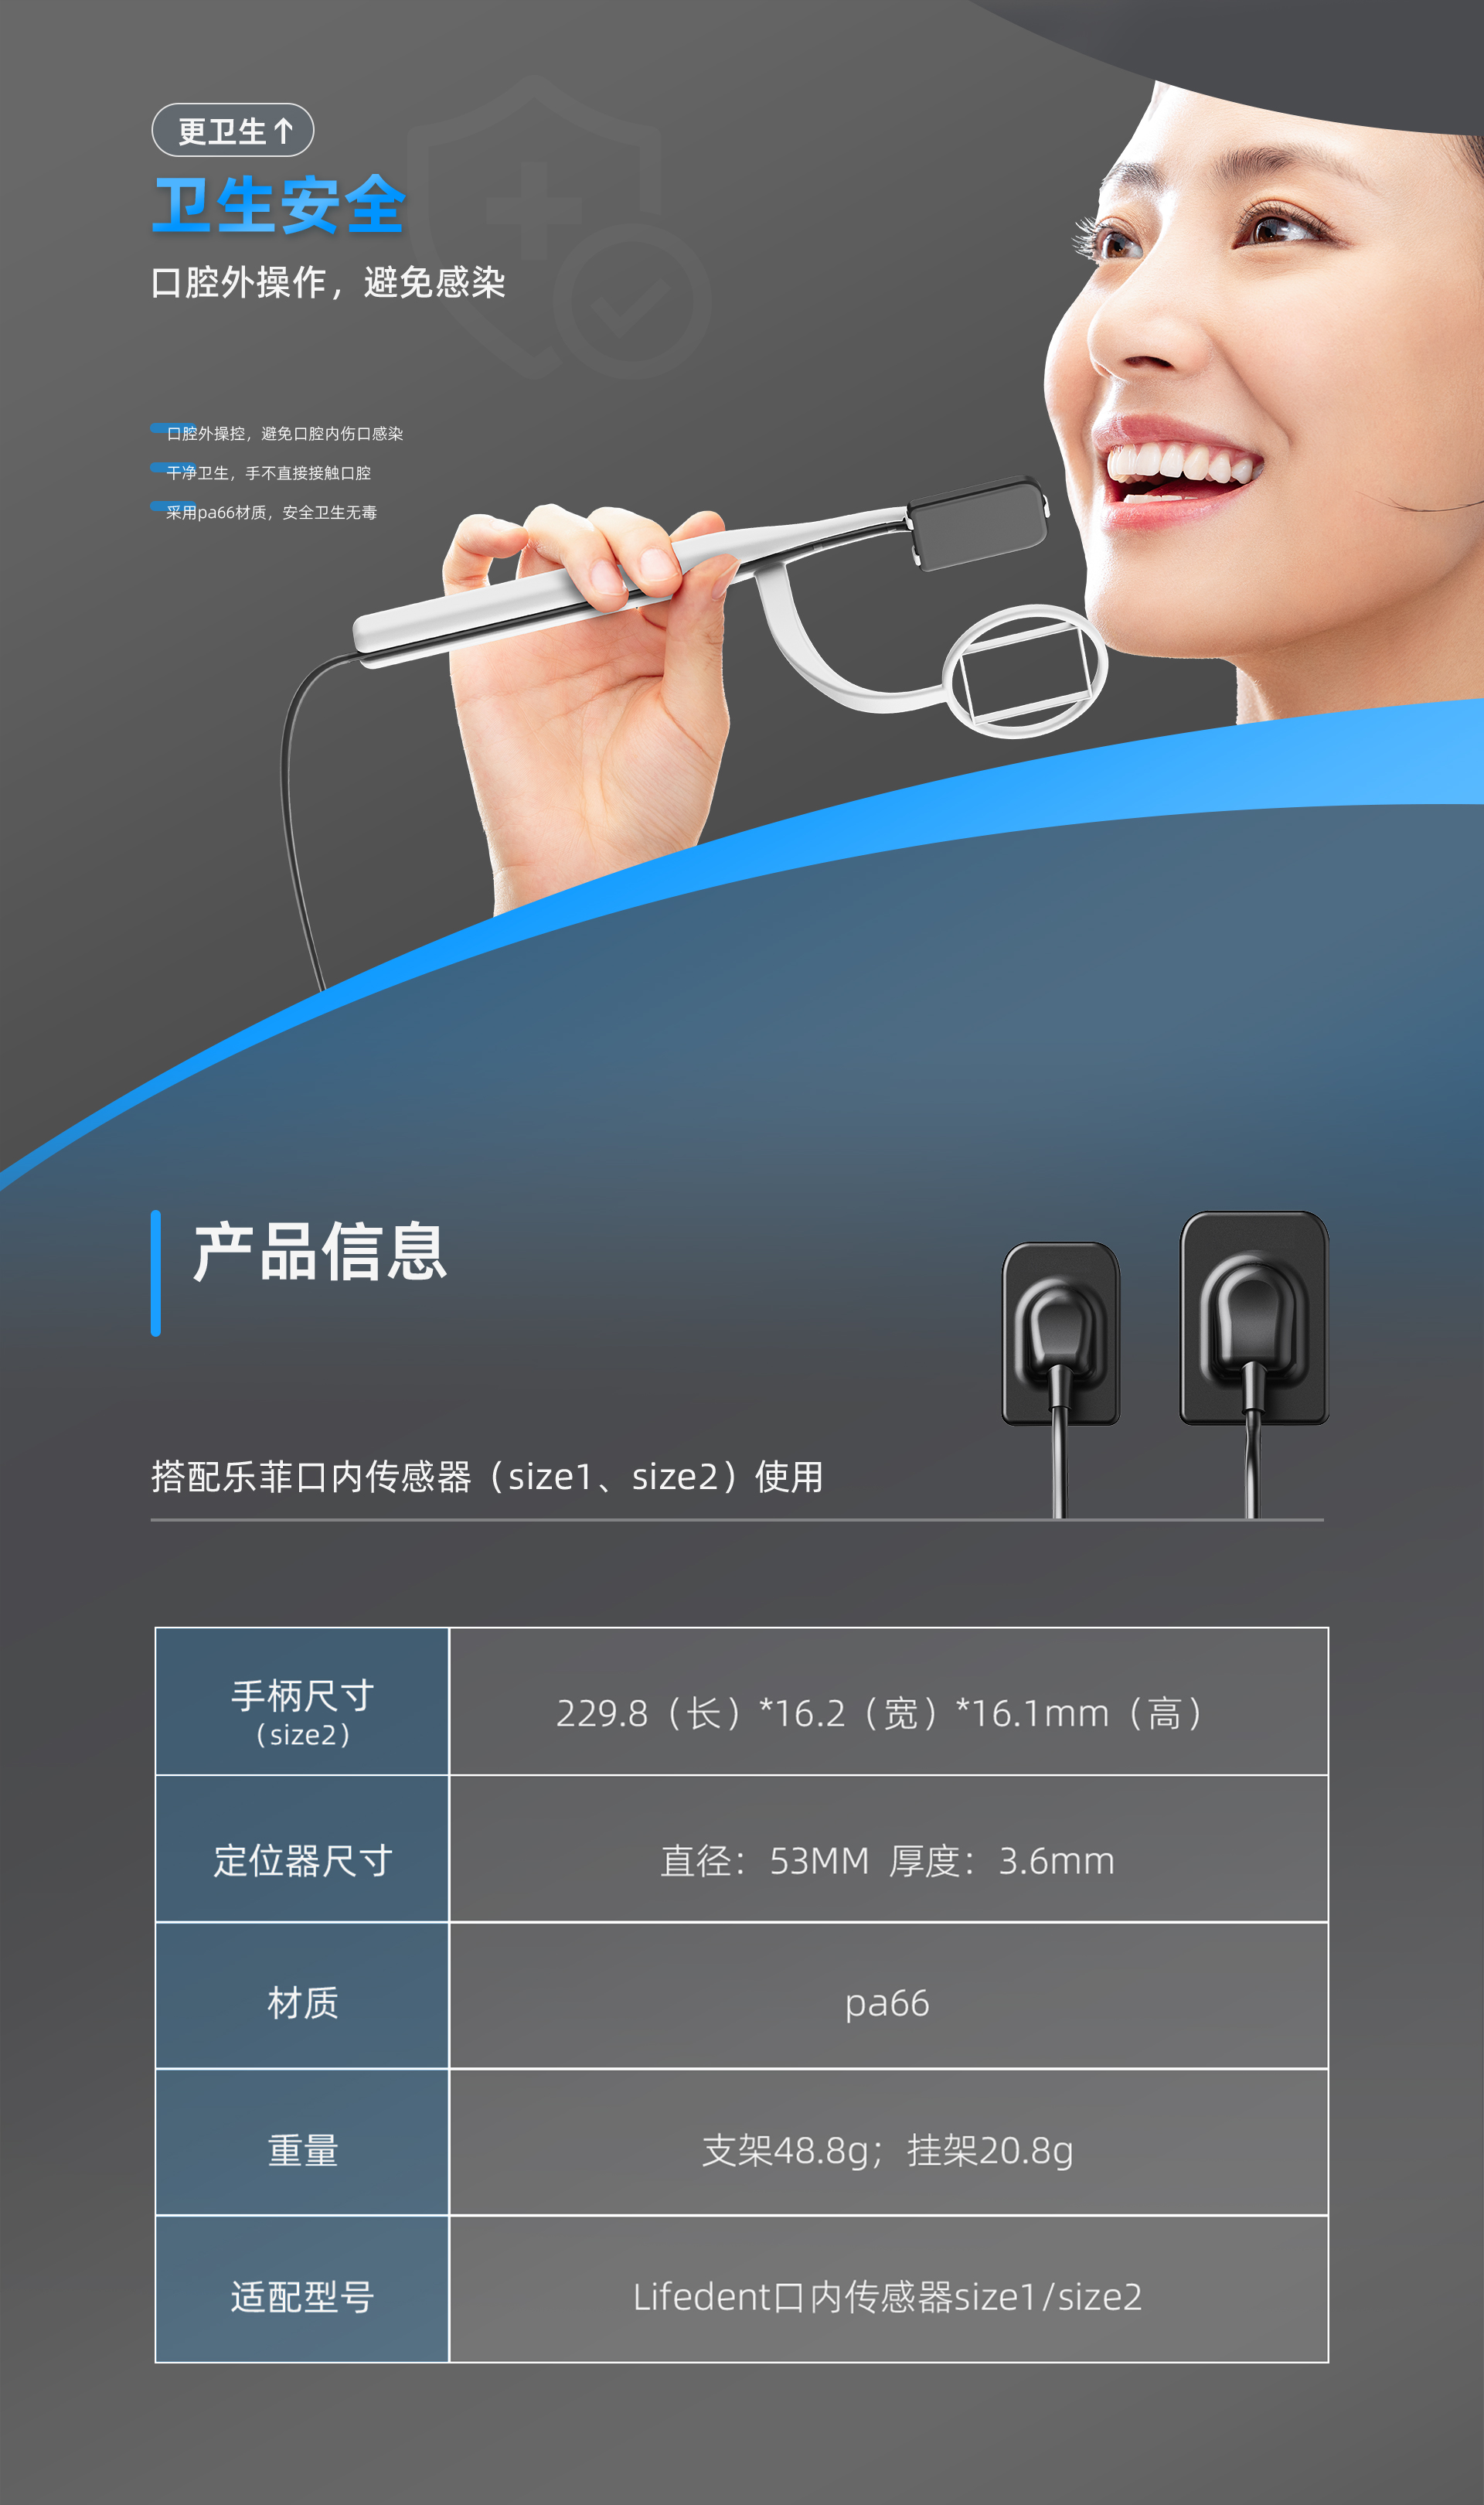 口内传感器支架产品介绍---网站中文_06.jpg